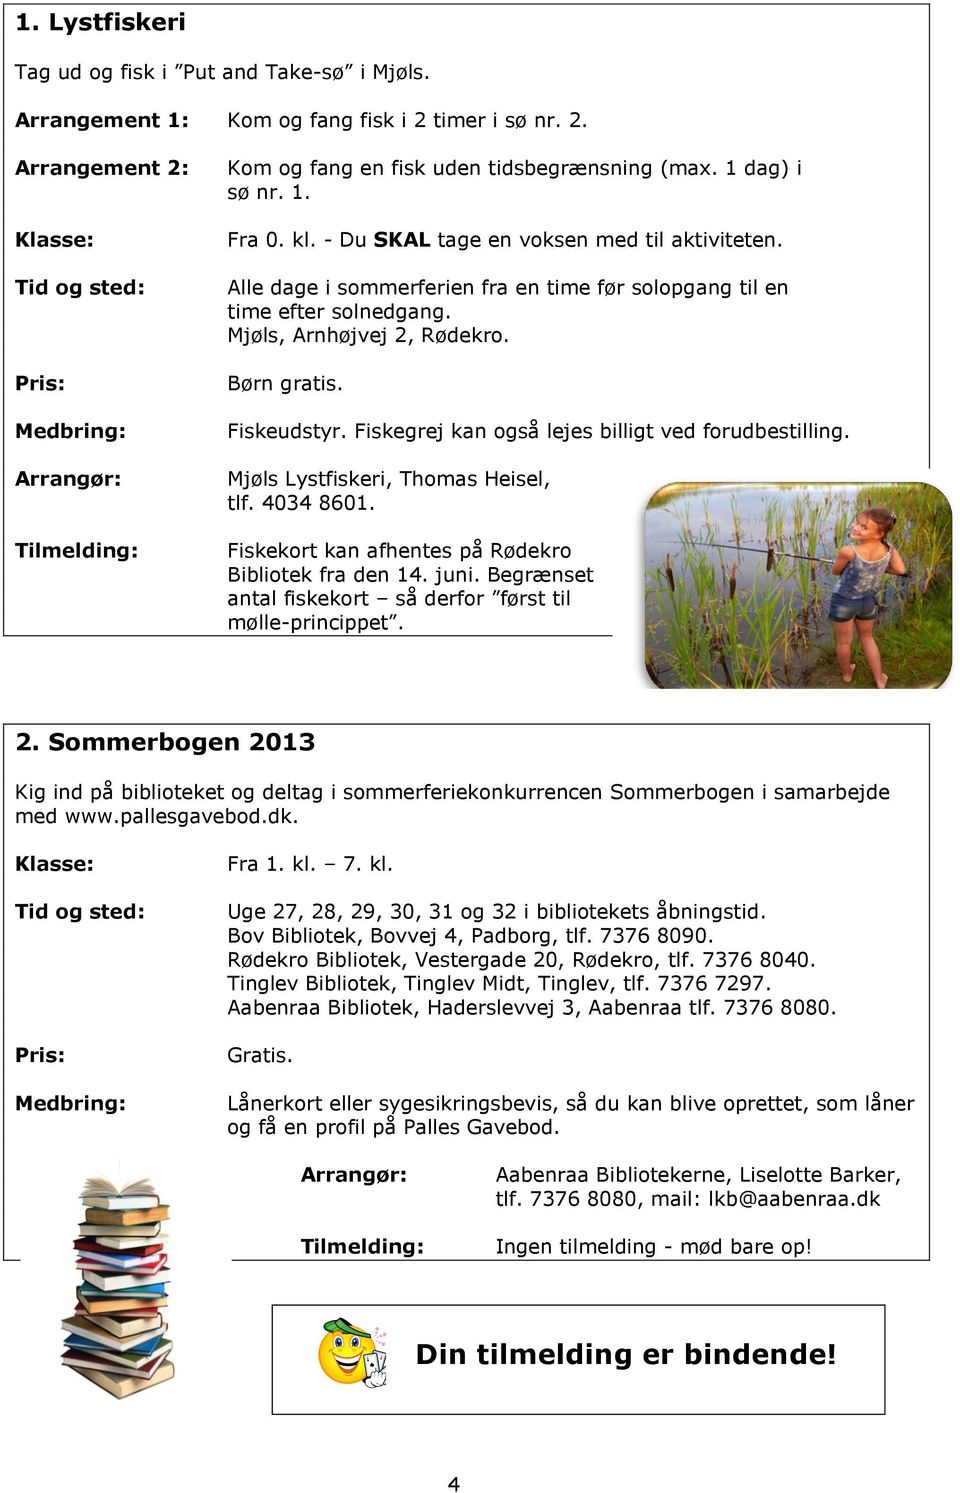 Fiskeudstyr. Fiskegrej kan også lejes billigt ved forudbestilling. Mjøls Lystfiskeri, Thomas Heisel, tlf. 4034 8601. Fiskekort kan afhentes på Rødekro Bibliotek fra den 14. juni.